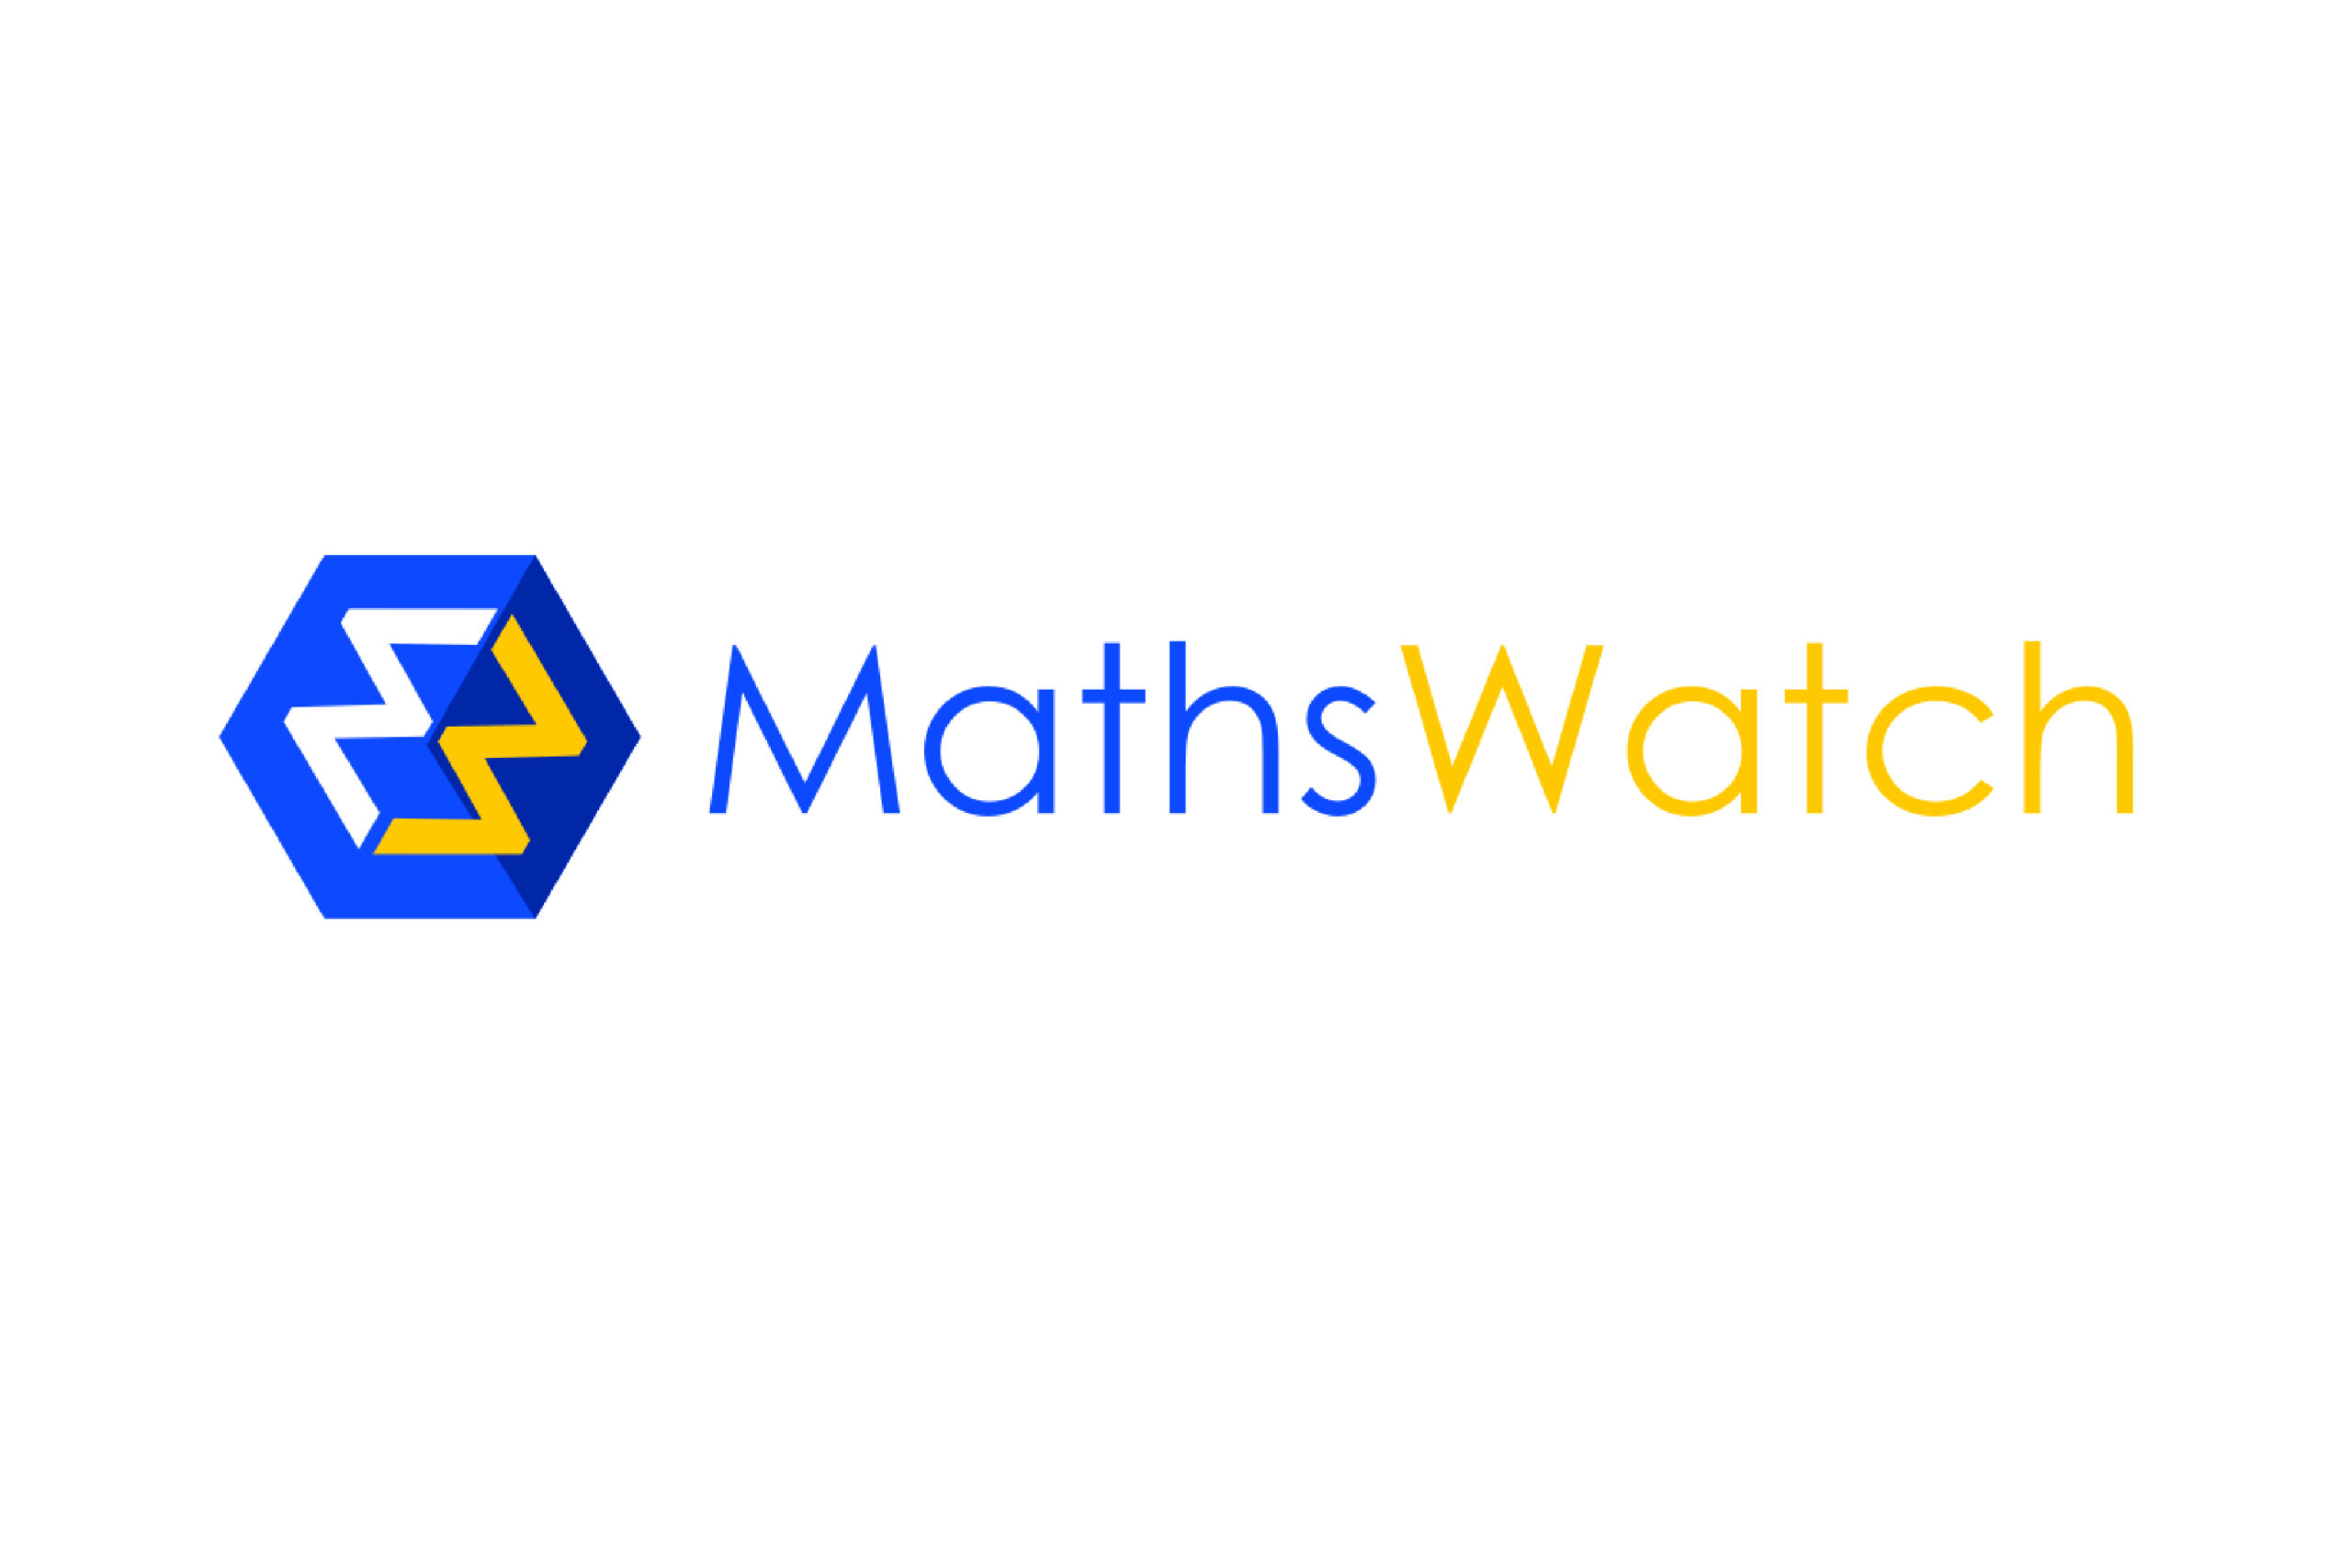 Mathswatch